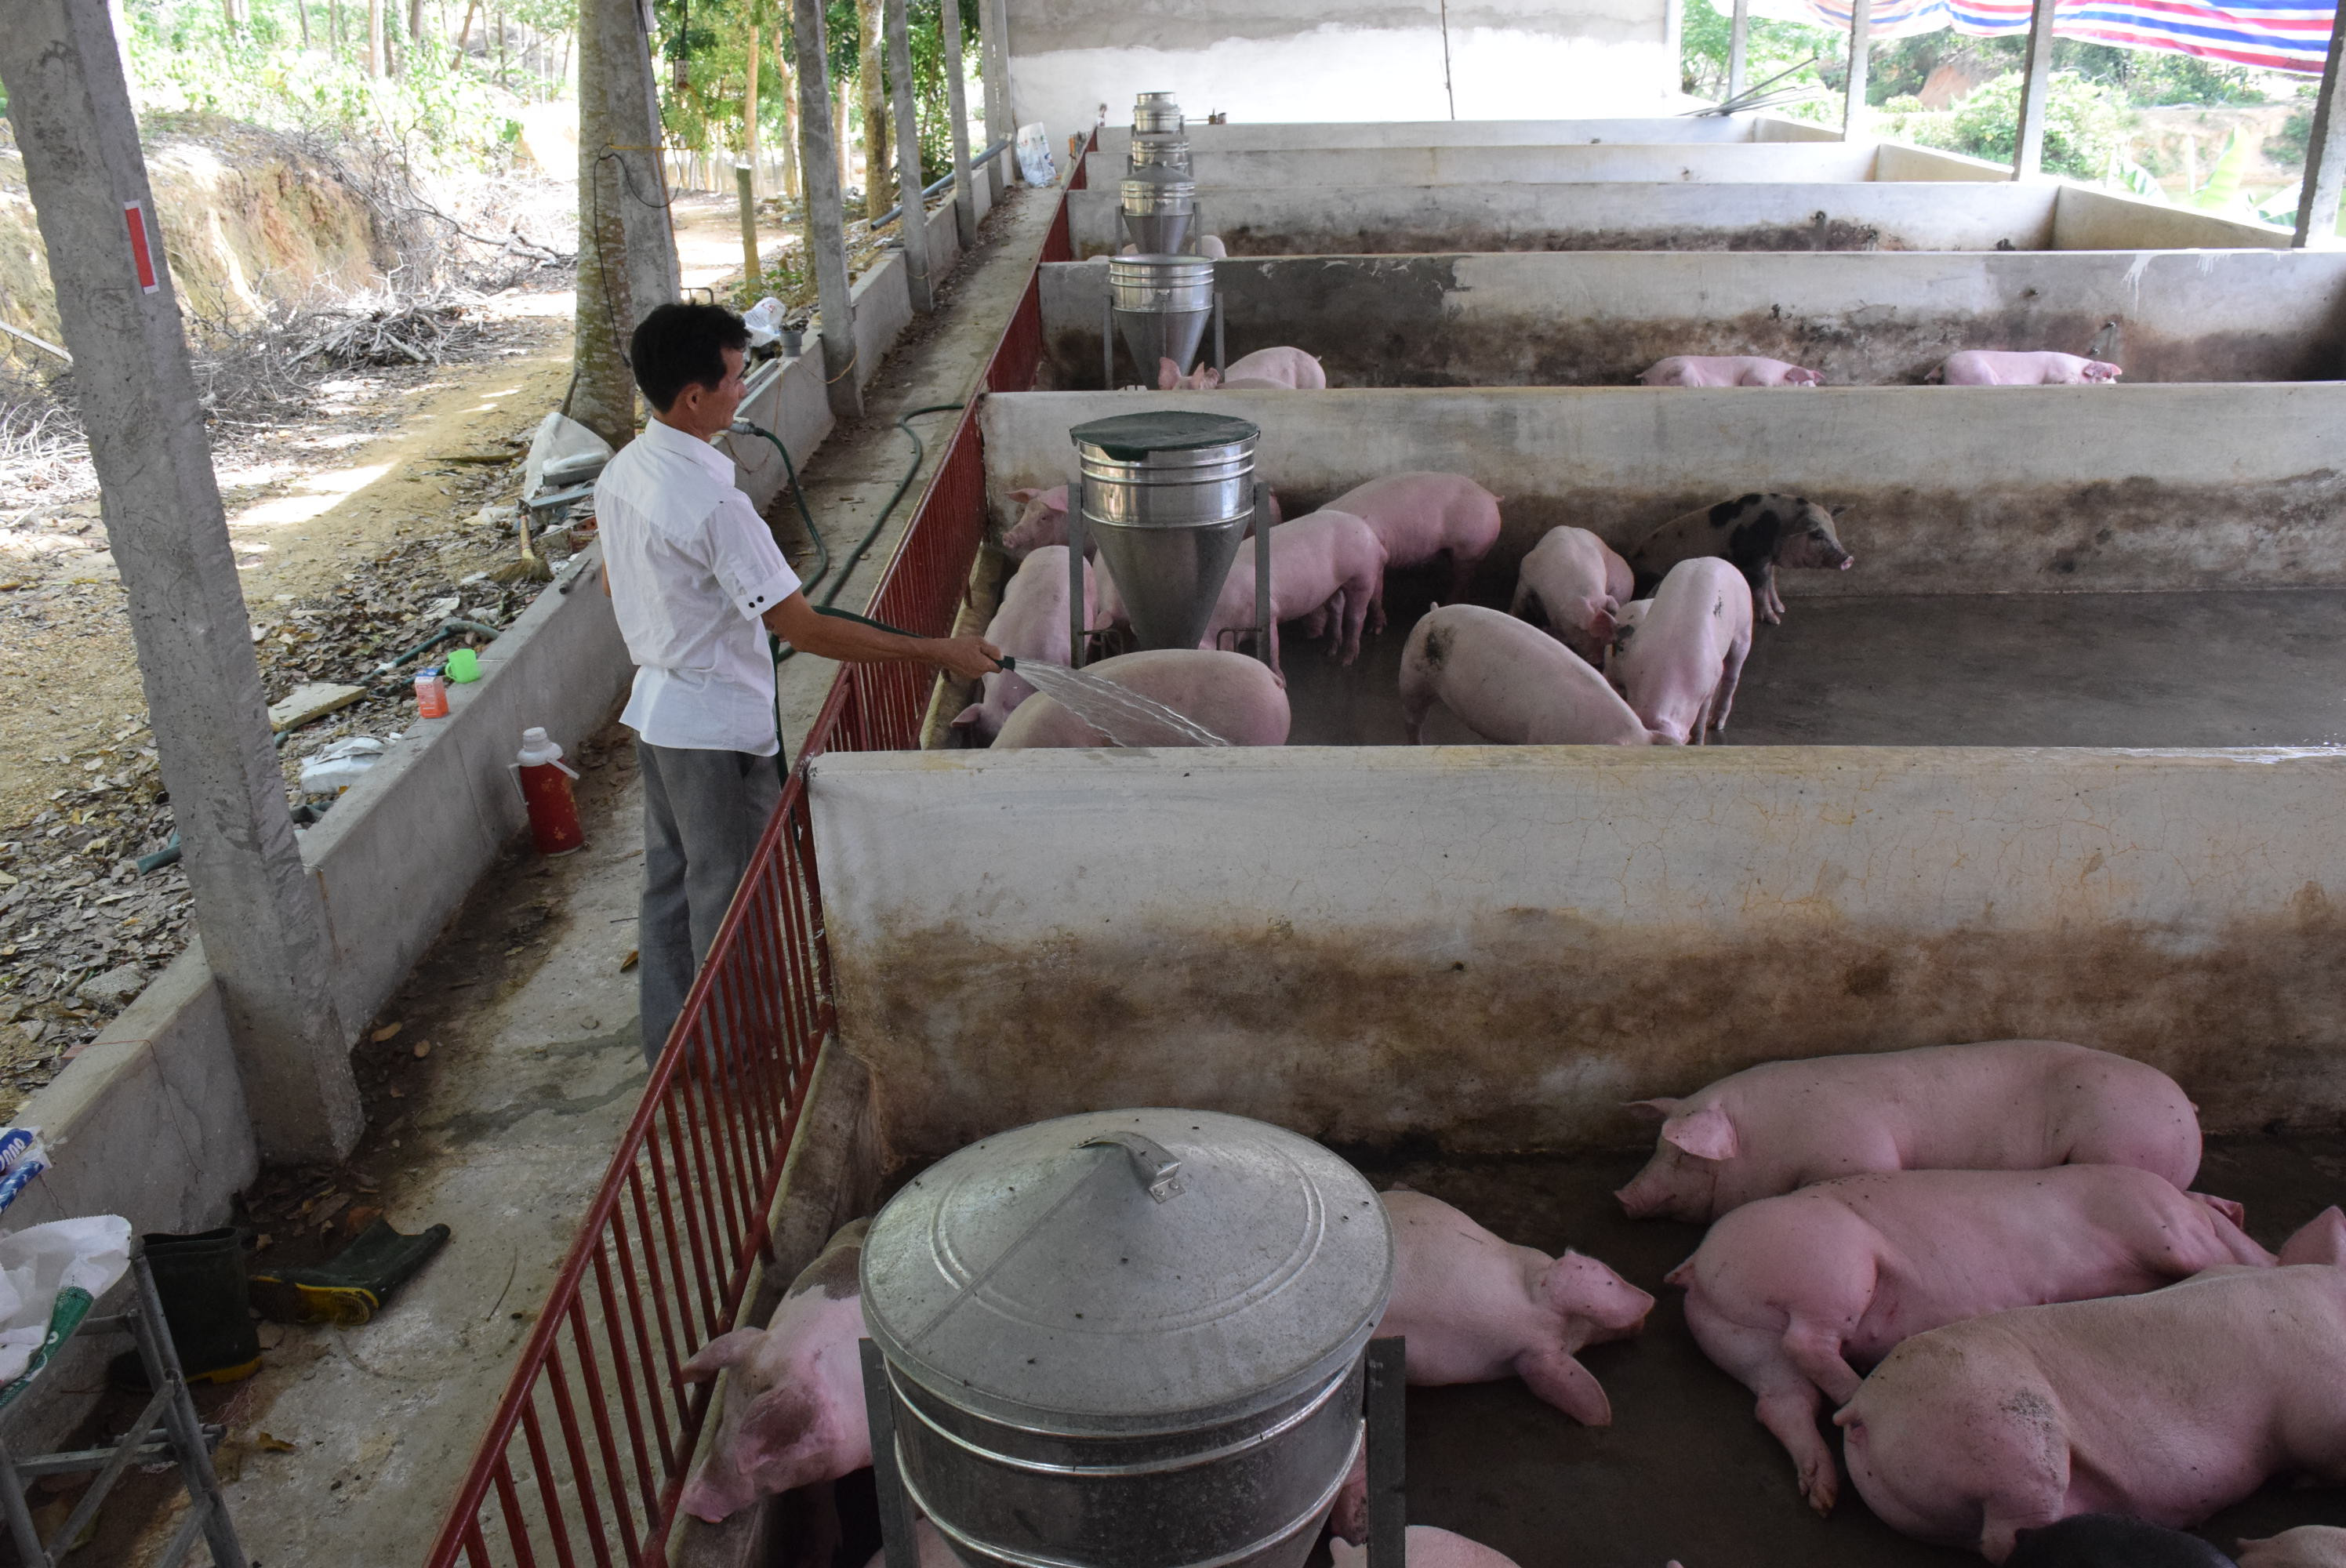 Theo dự kiến, đến hết quý 3/2020, nhờ làm tốt công tác tái đàn và quản lý dịch bệnh nên nguồn cung lợn hơi dồi dào, giá lợn sẽ quay về mức hợp lý. Ảnh: P.V